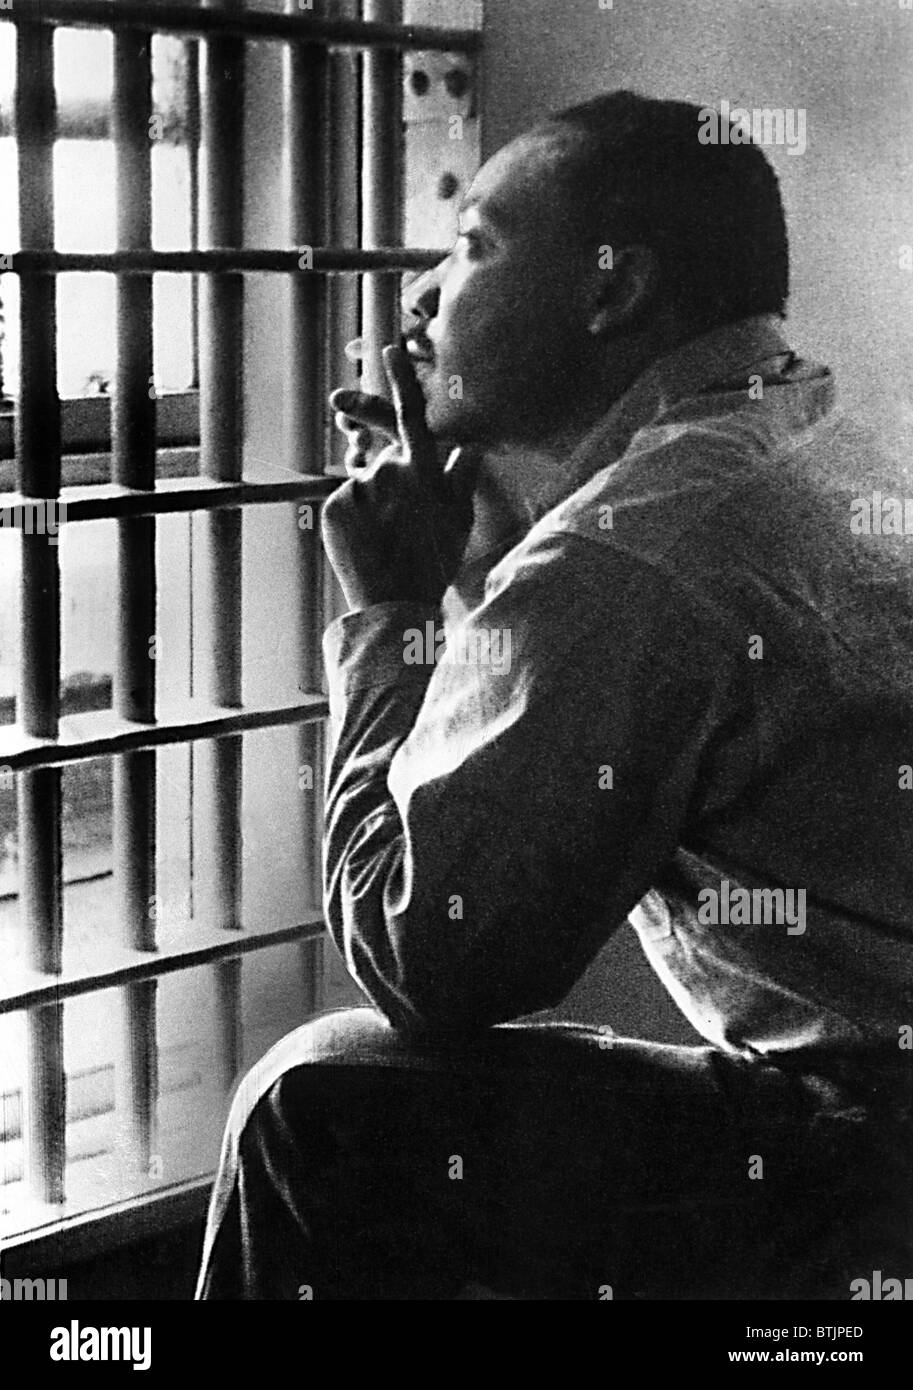 MARTIN LUTHER KING, JR, assis dans la prison du comté de Jefferson, à Birmingham, Alabama, 11/3/67. Everett/CSU Archives. Banque D'Images